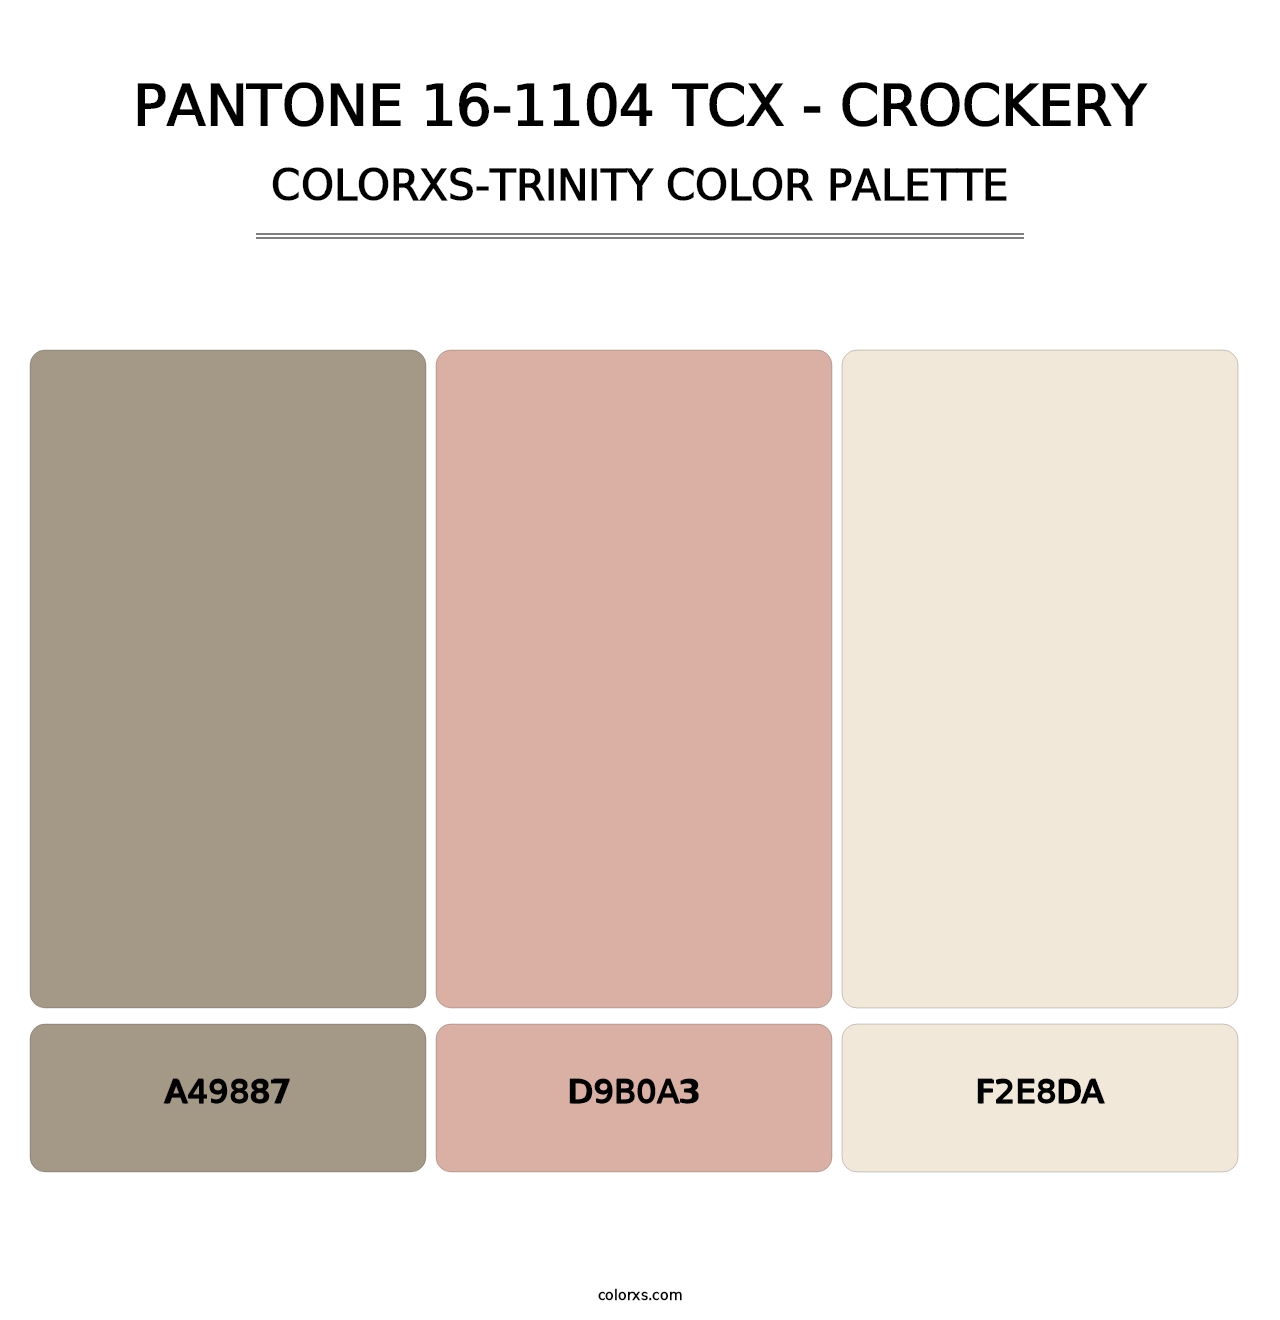 PANTONE 16-1104 TCX - Crockery - Colorxs Trinity Palette